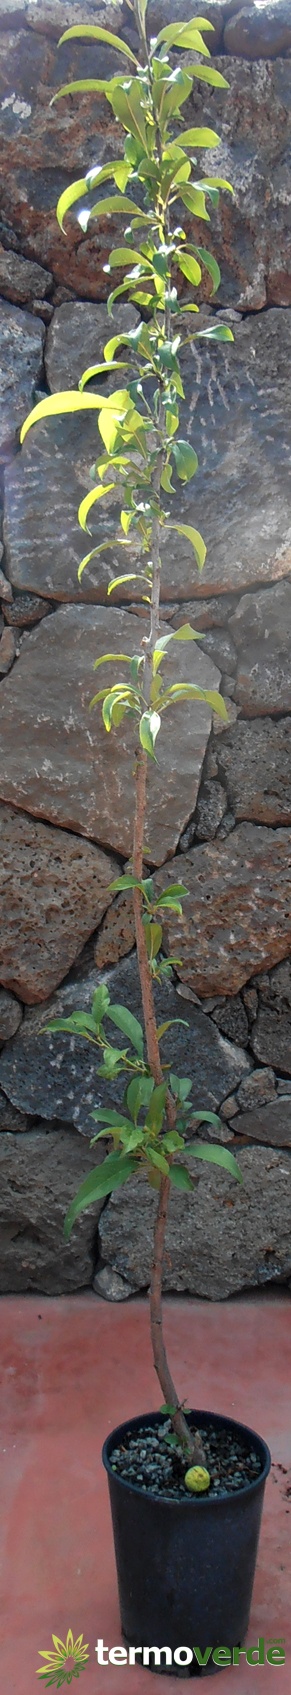 Árbol de pistacho macho polinizador, envío en plataforma